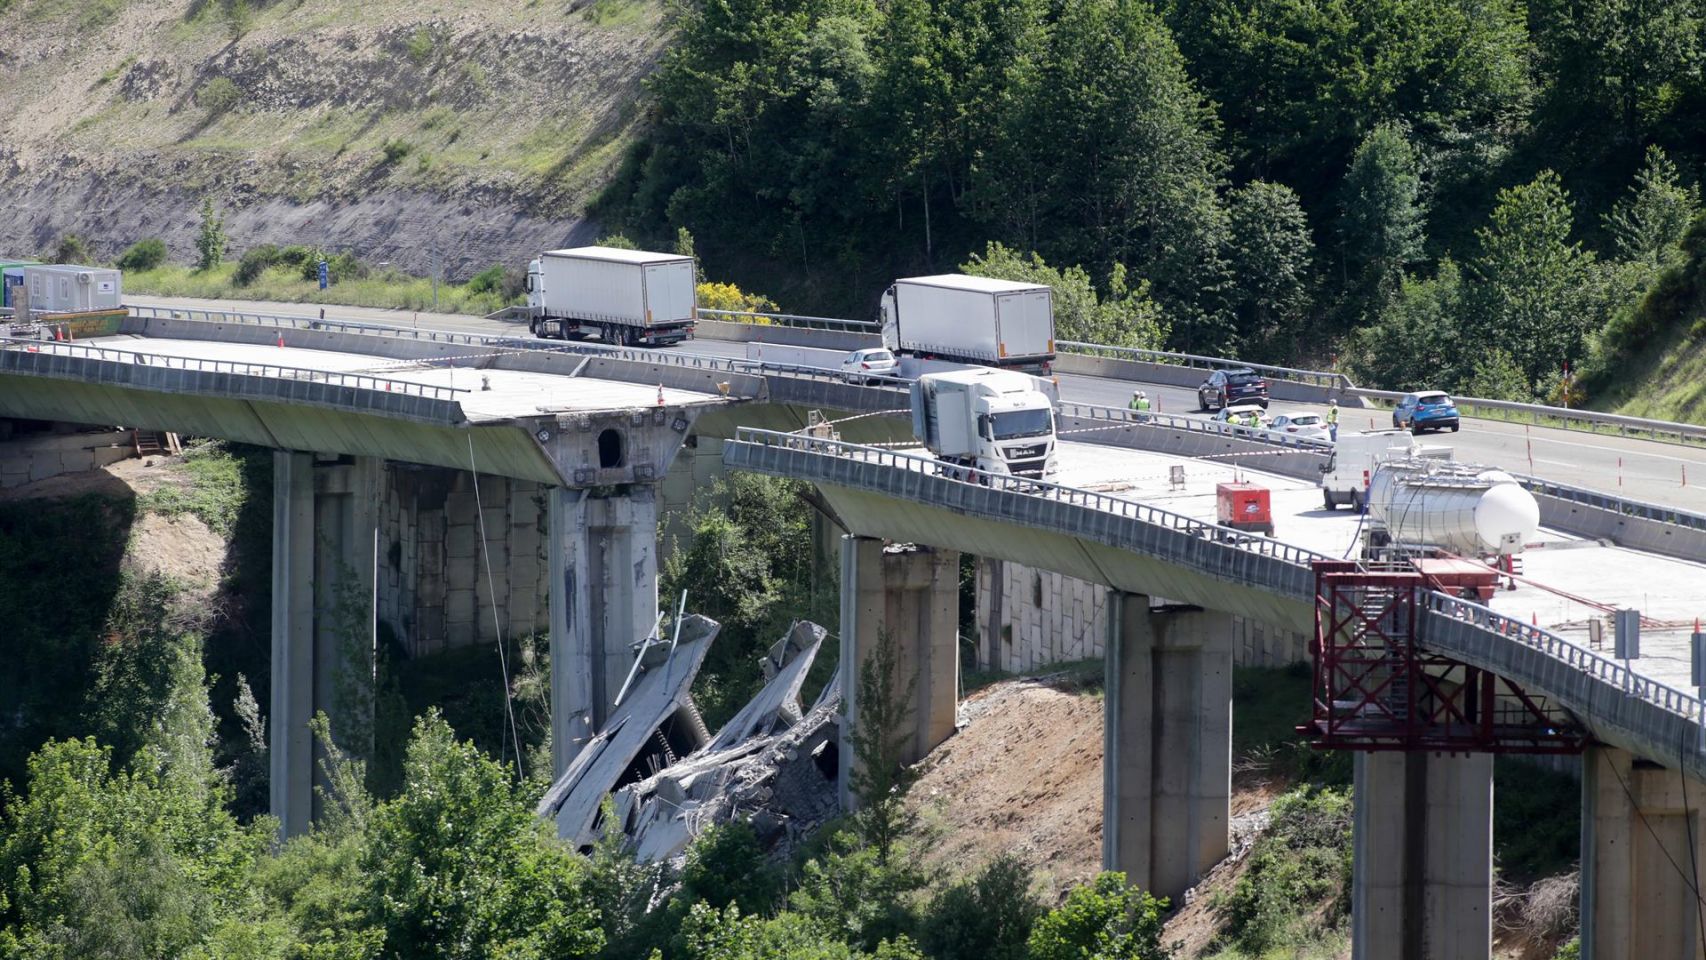 Varios vehículos circulan por la zona de arriba de donde se ha desprendido la parte de un puente.